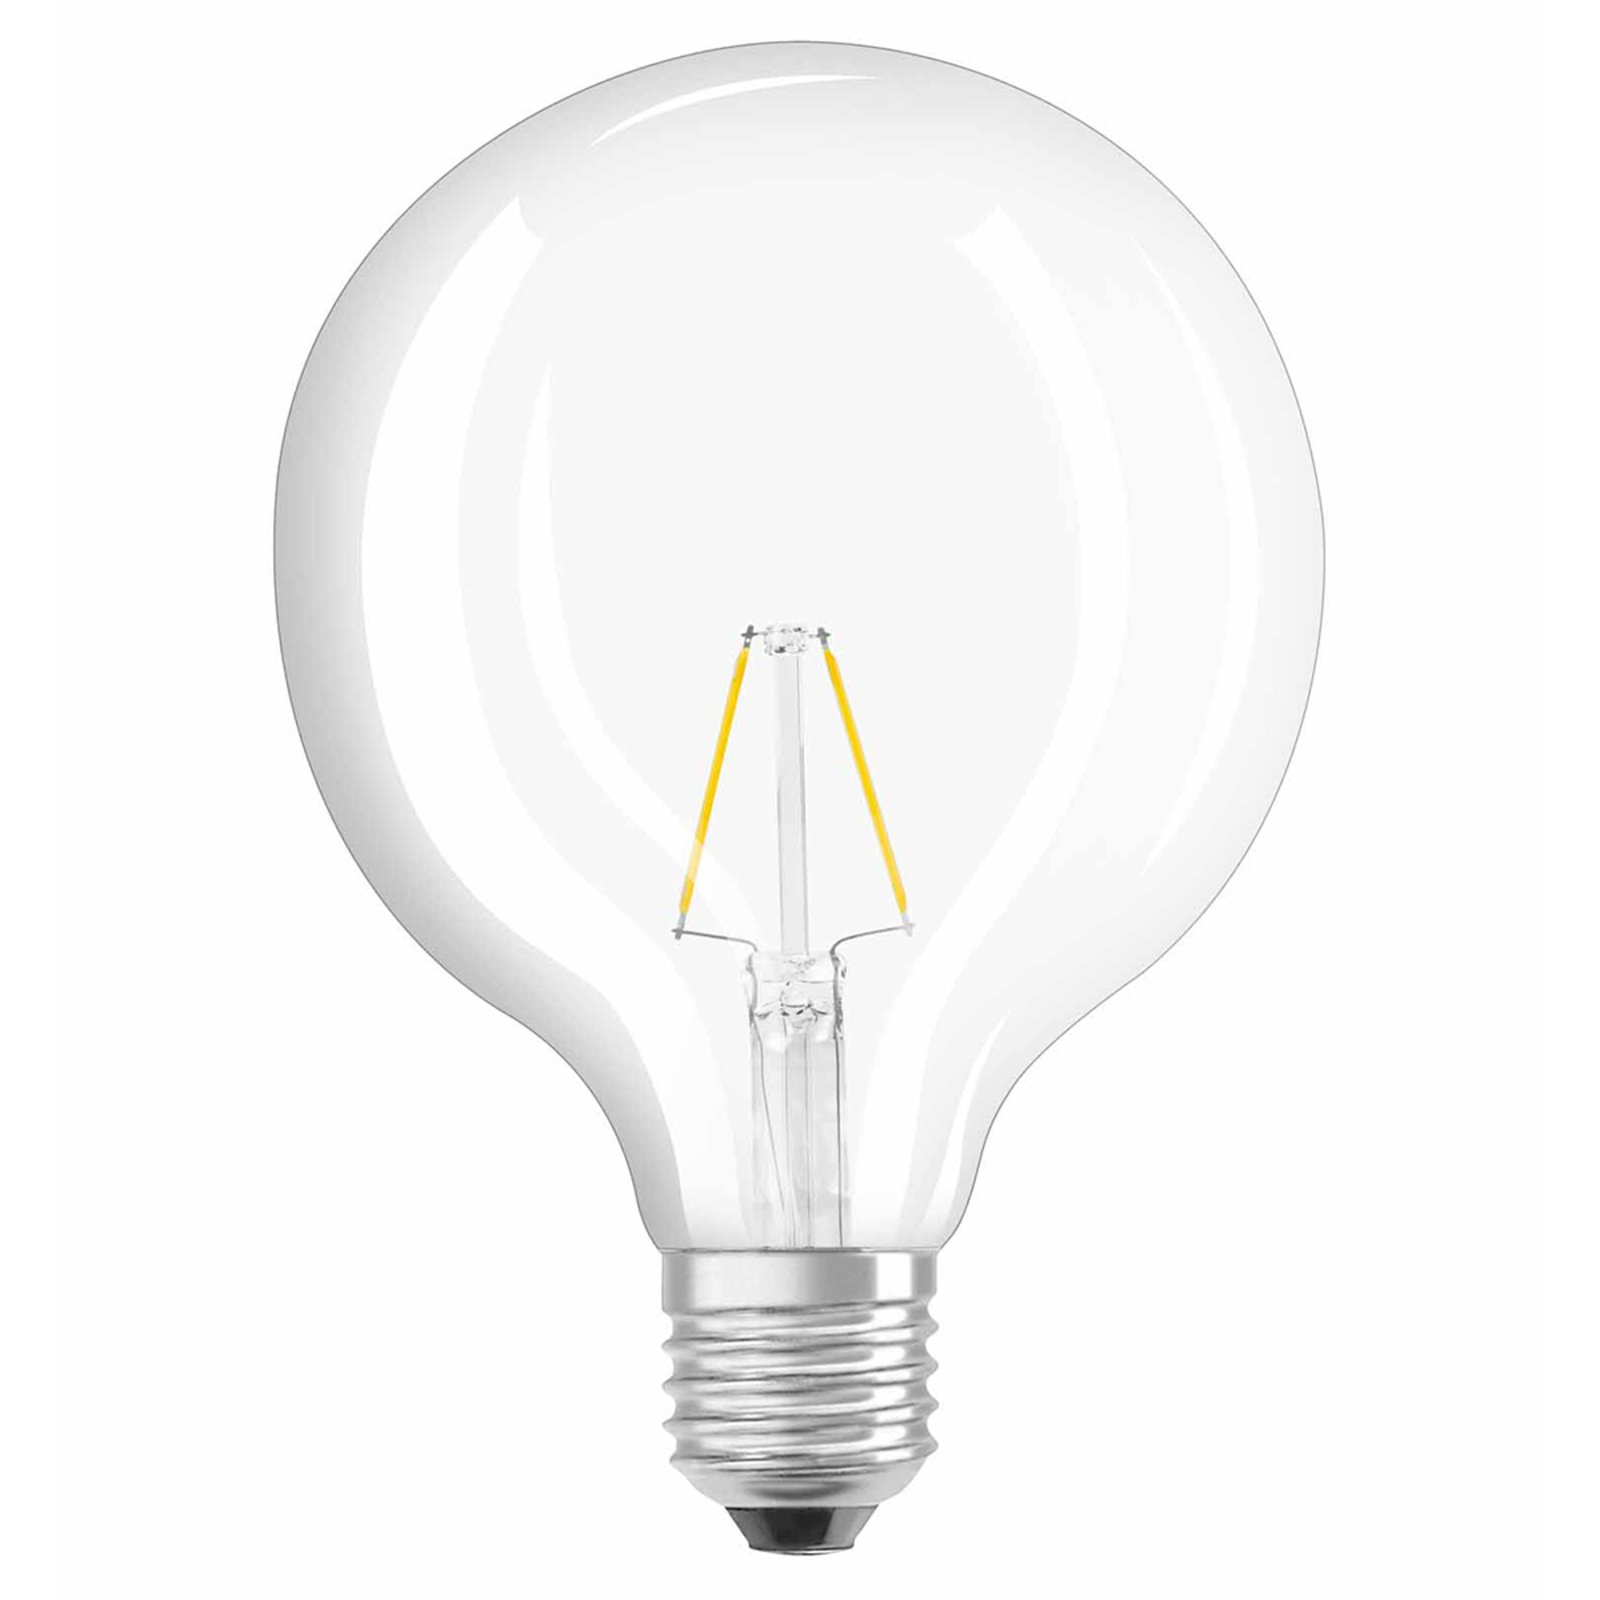 LED globe bulb E27 2.5W 827 retrofit